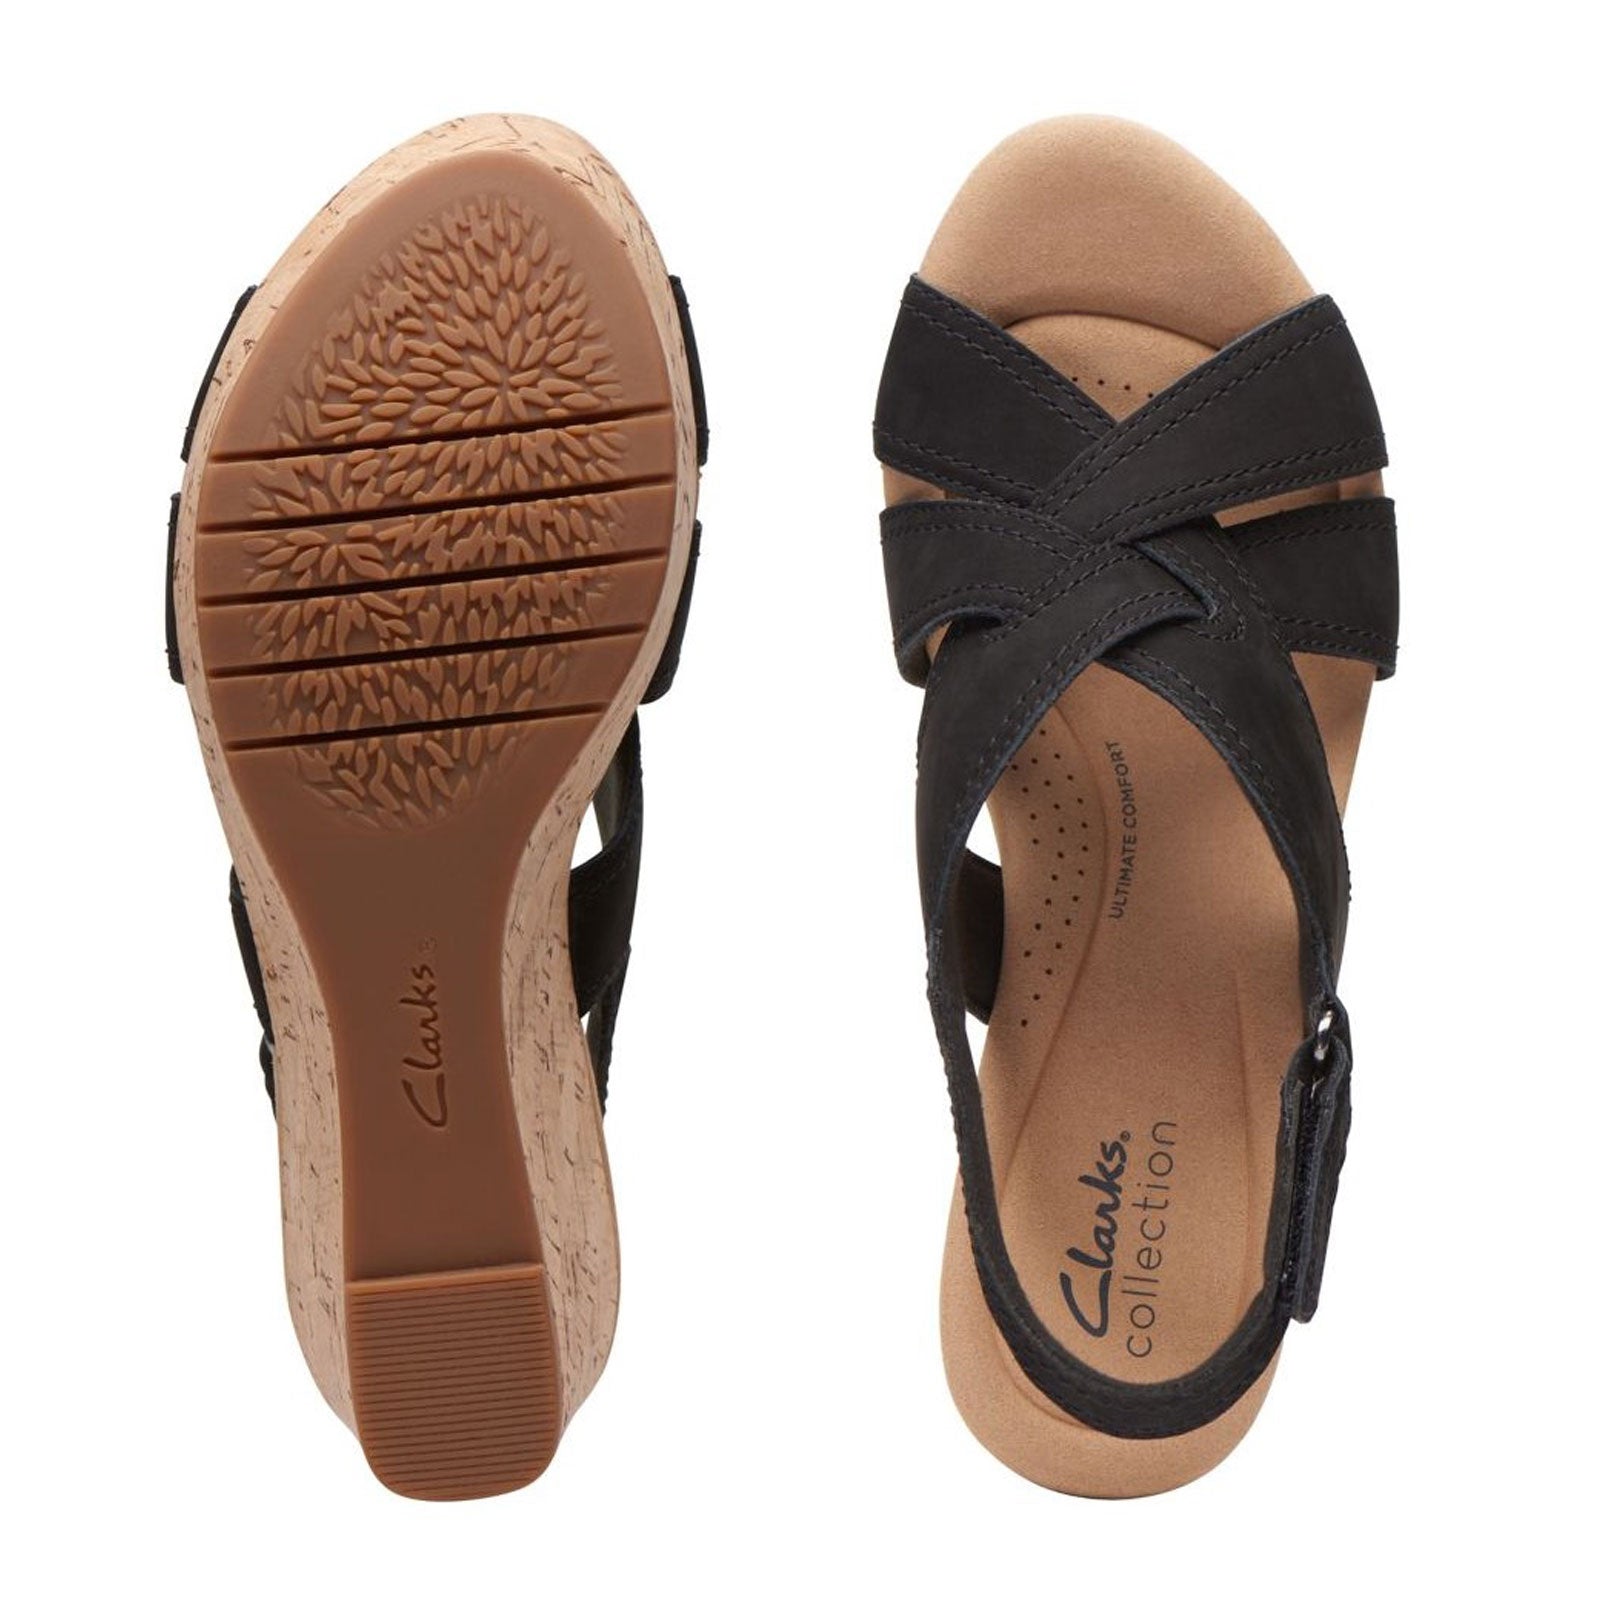 Clarks Originals Crepe tassel-embellished Platform Sandals - Farfetch